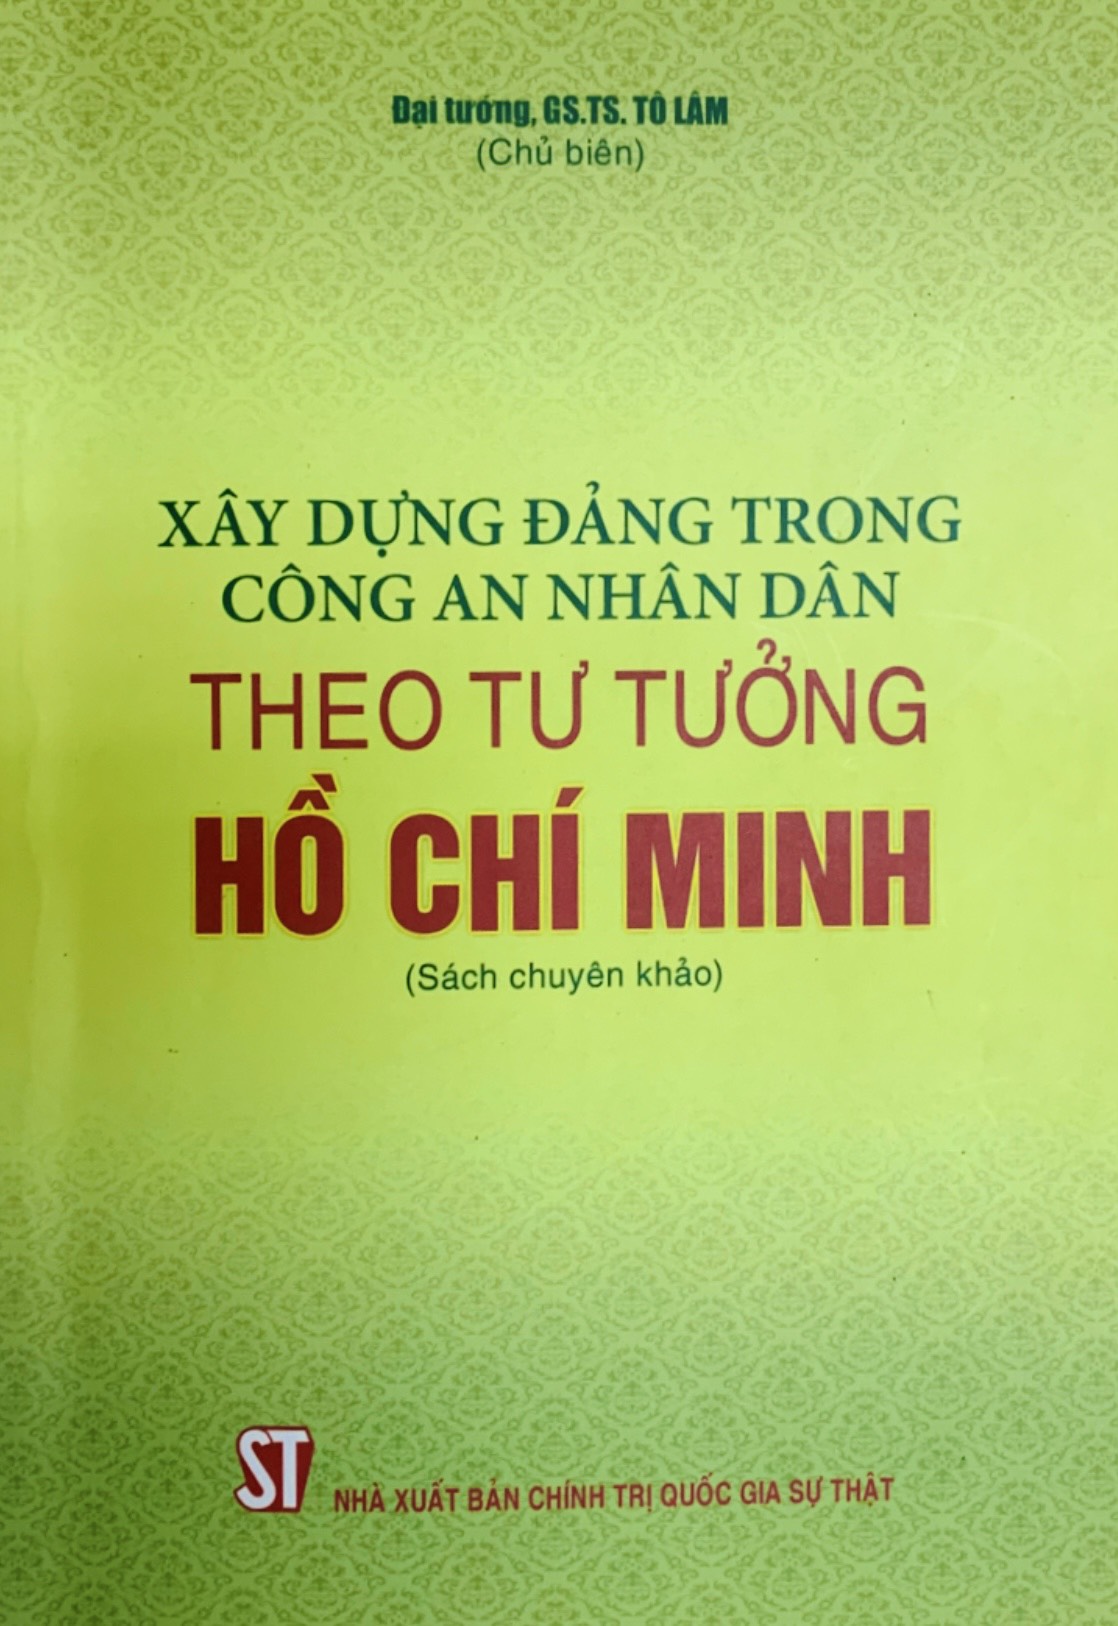 Xây dựng Đảng trong Công an nhân dân theo tư tưởng Hồ Chí Minh (Sách chuyên khảo) (bản in 2020)